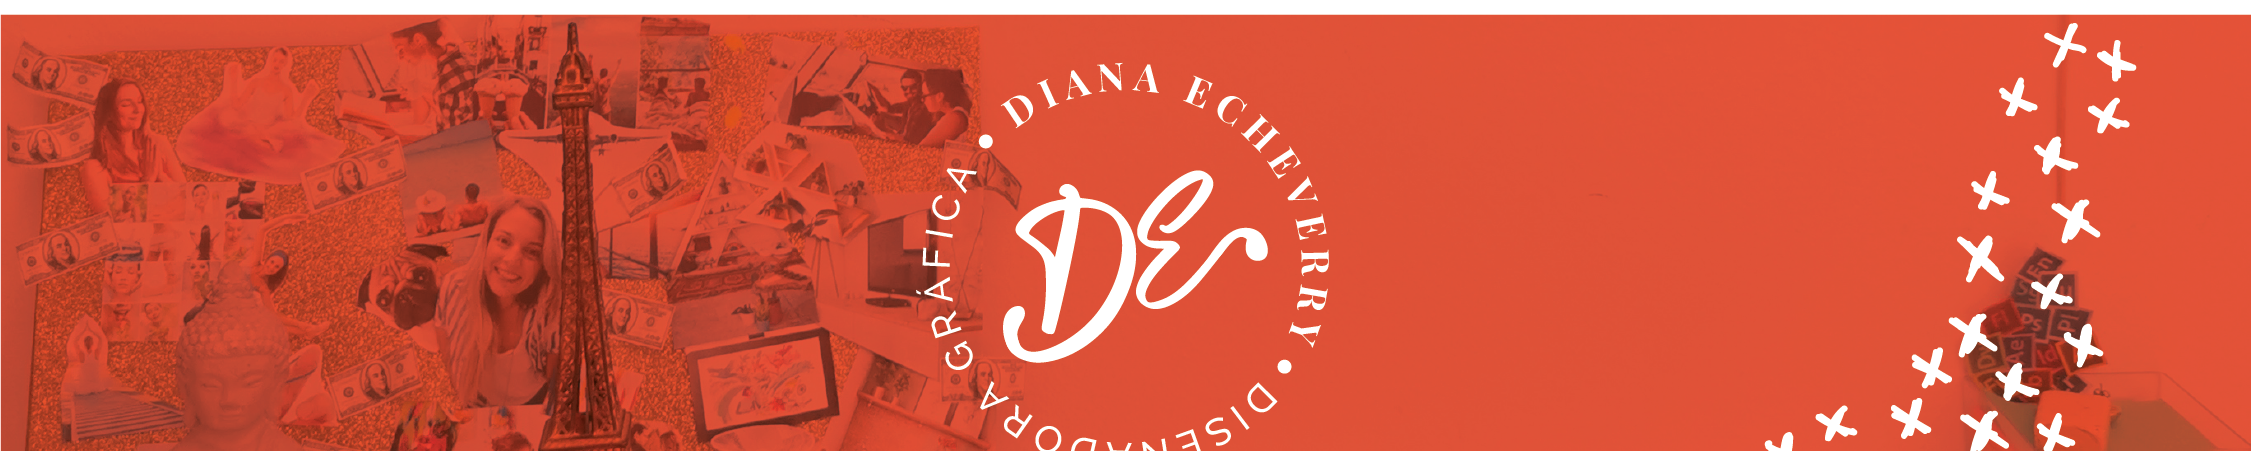 Diana Echeverry's profile banner